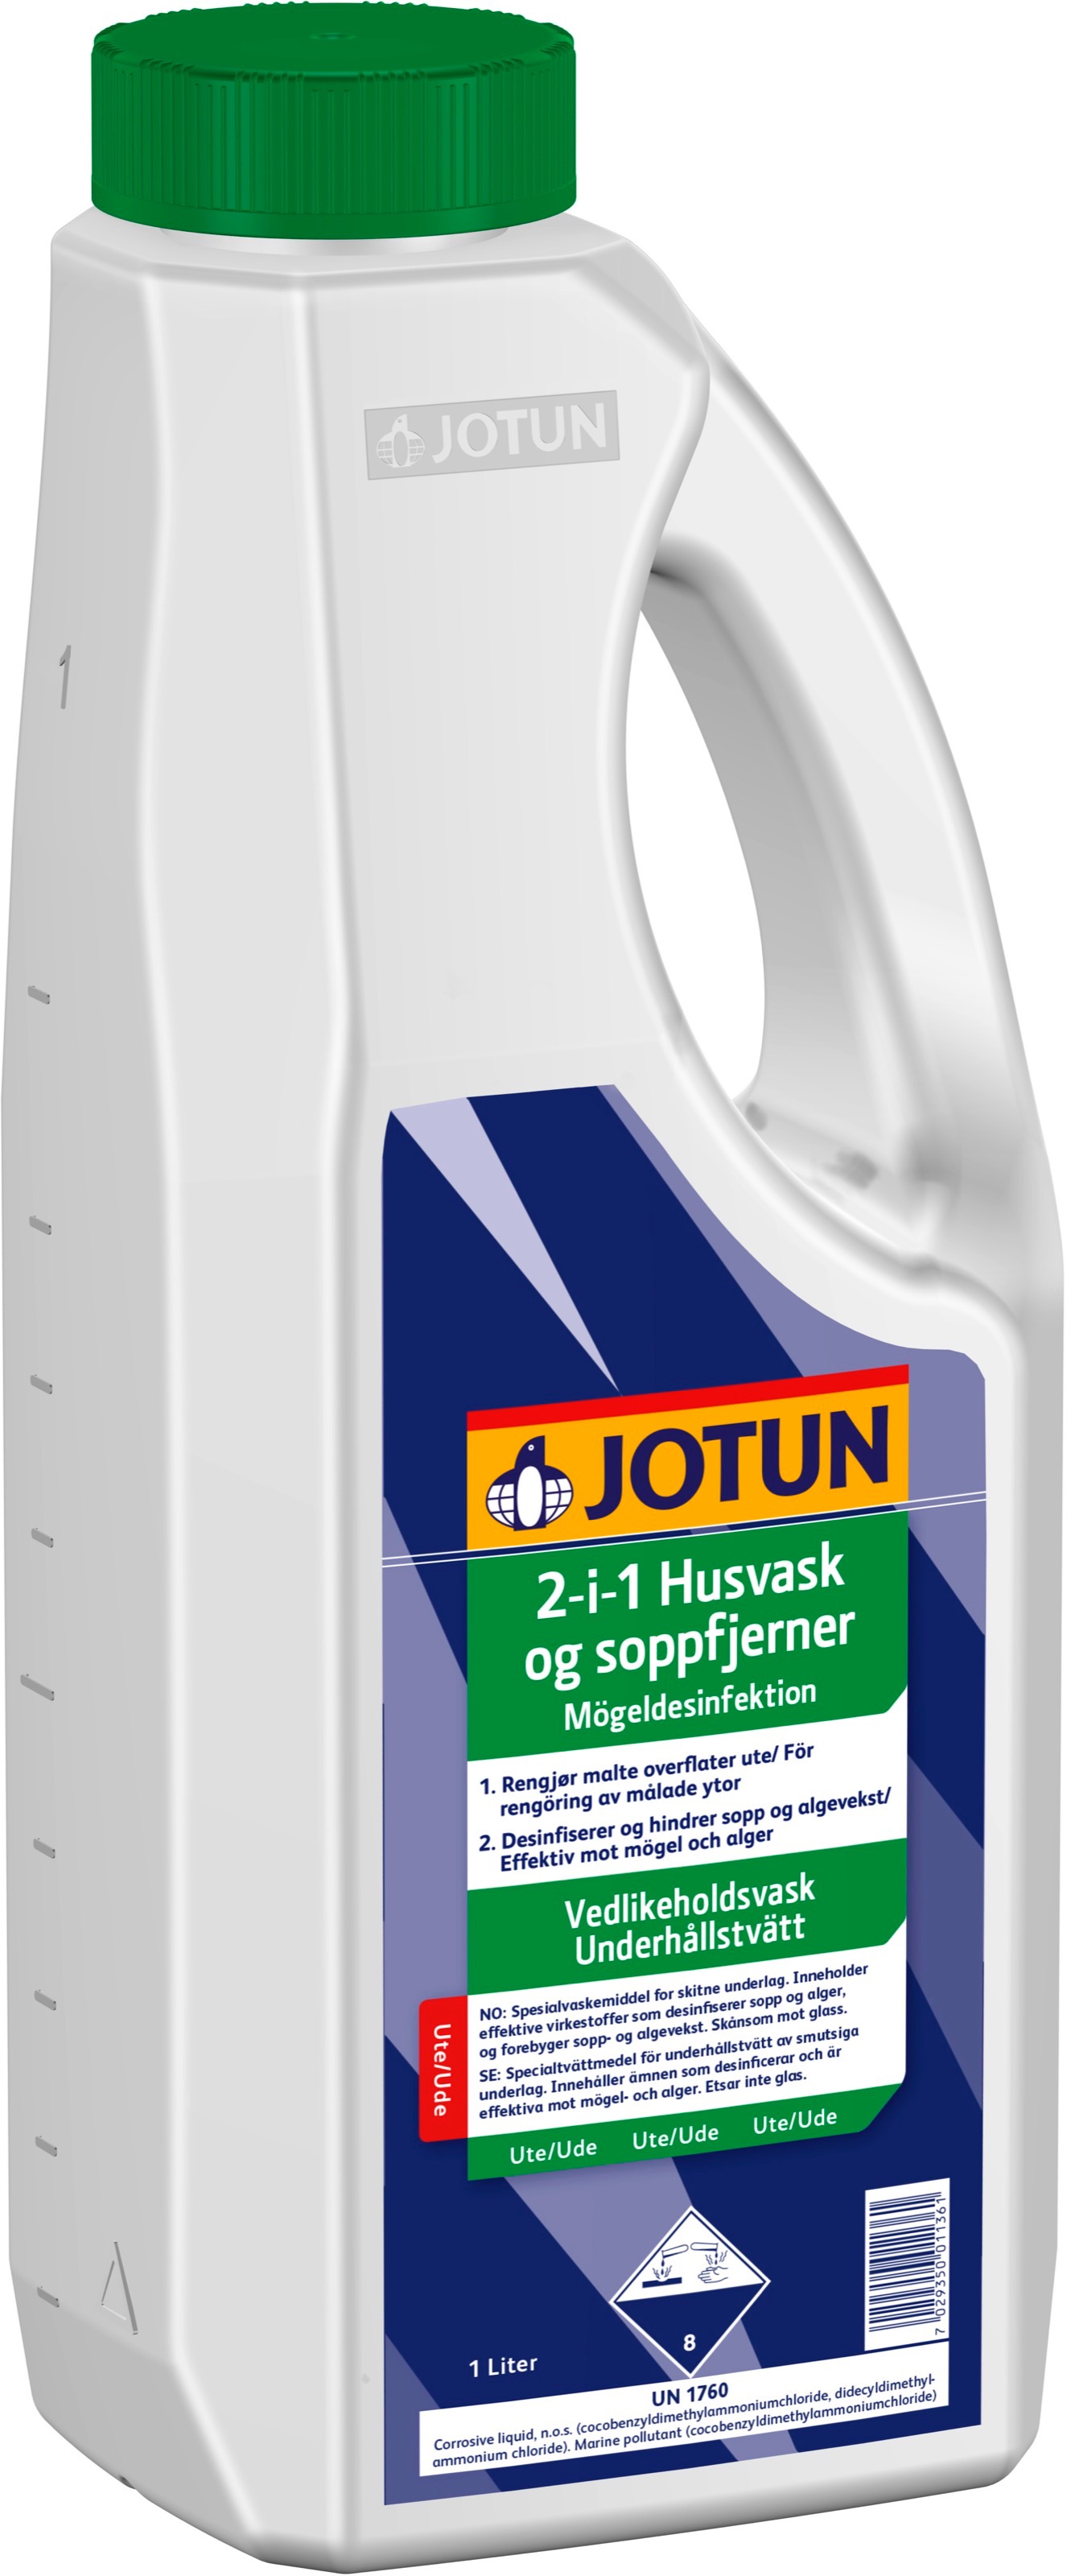 Produkt miniatyrebild Jotun 2-i-1 husvask og soppfjerner